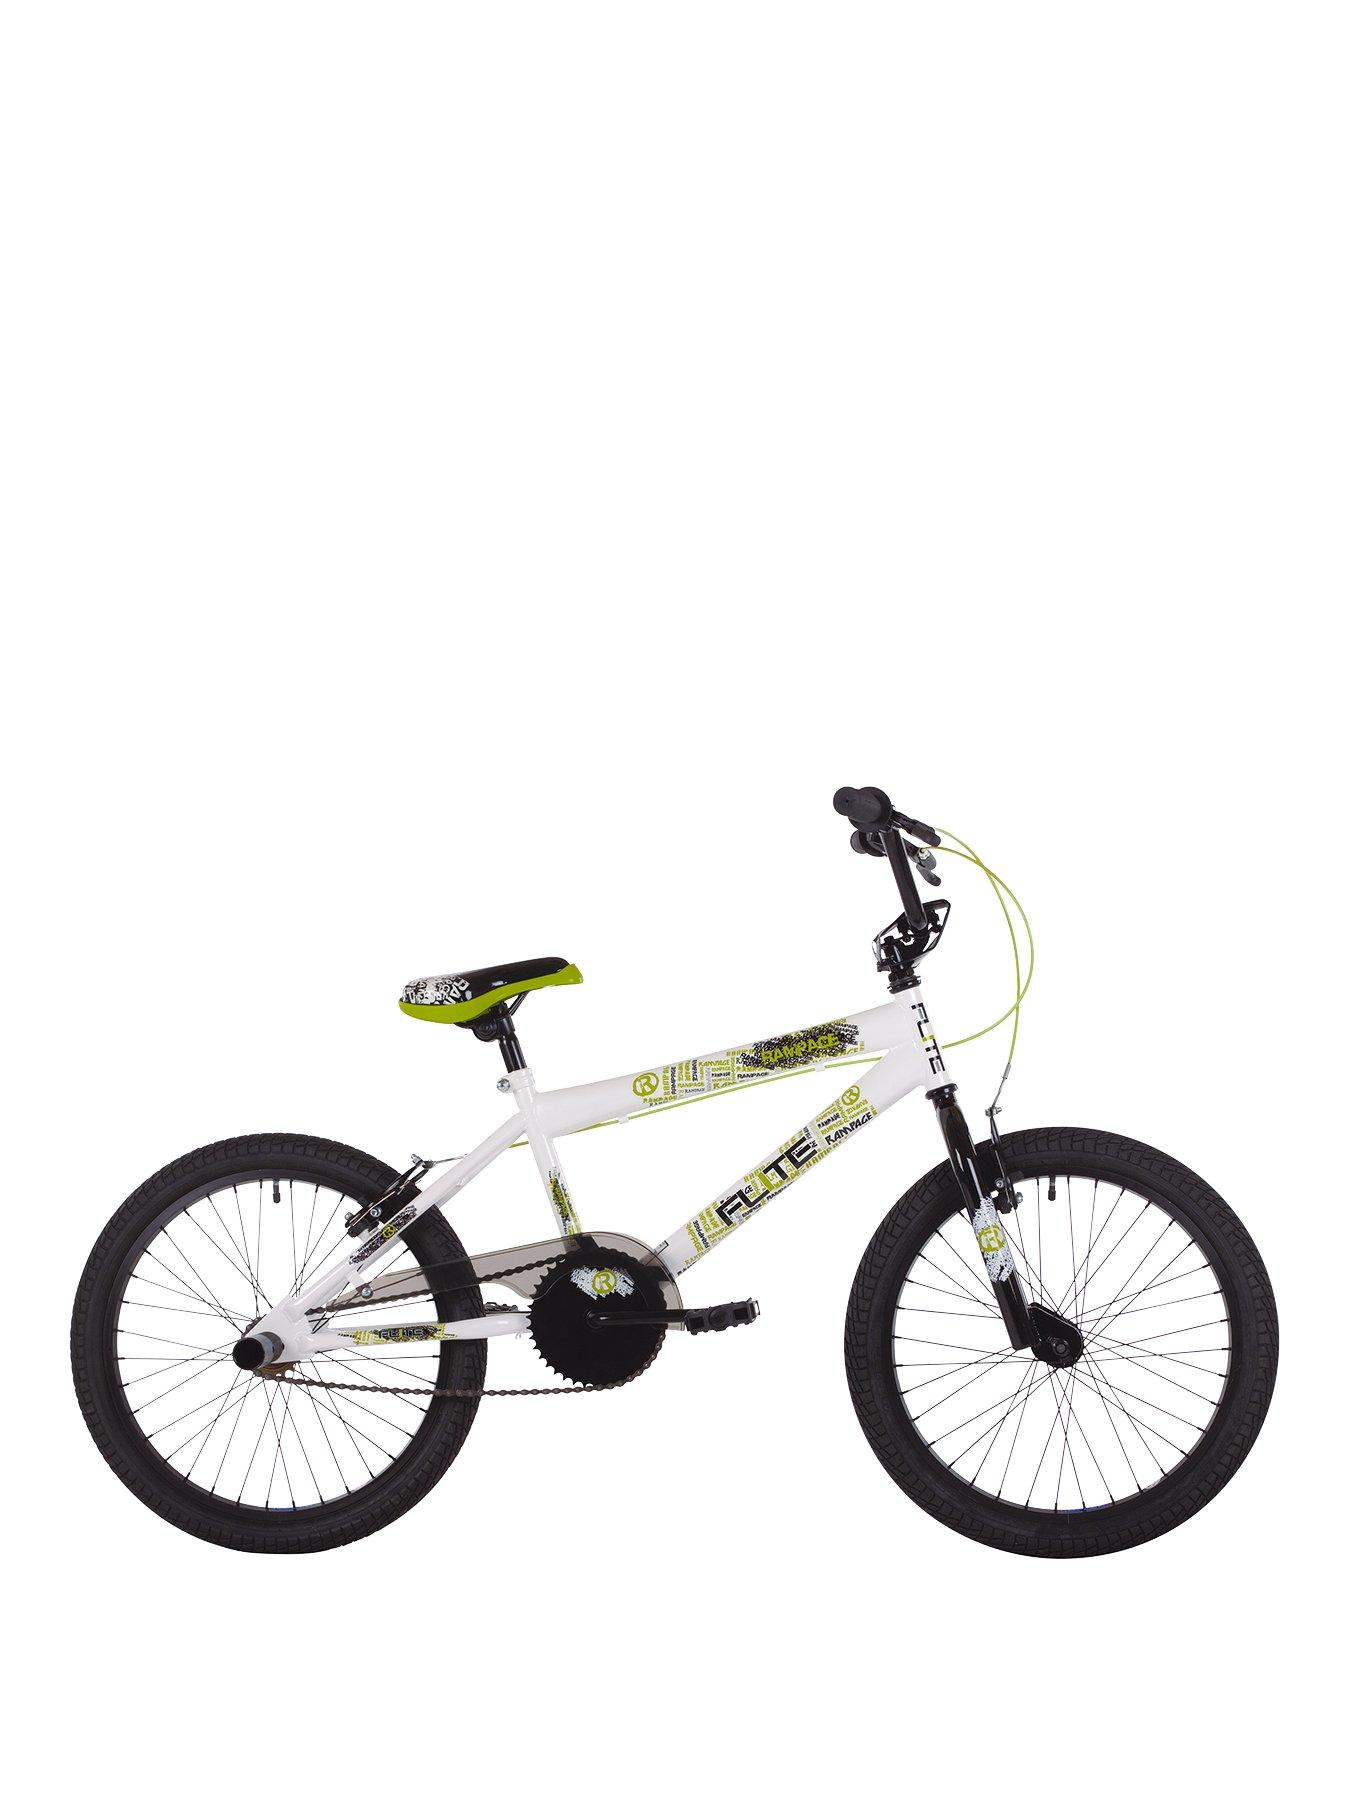 30 inch bmx bike